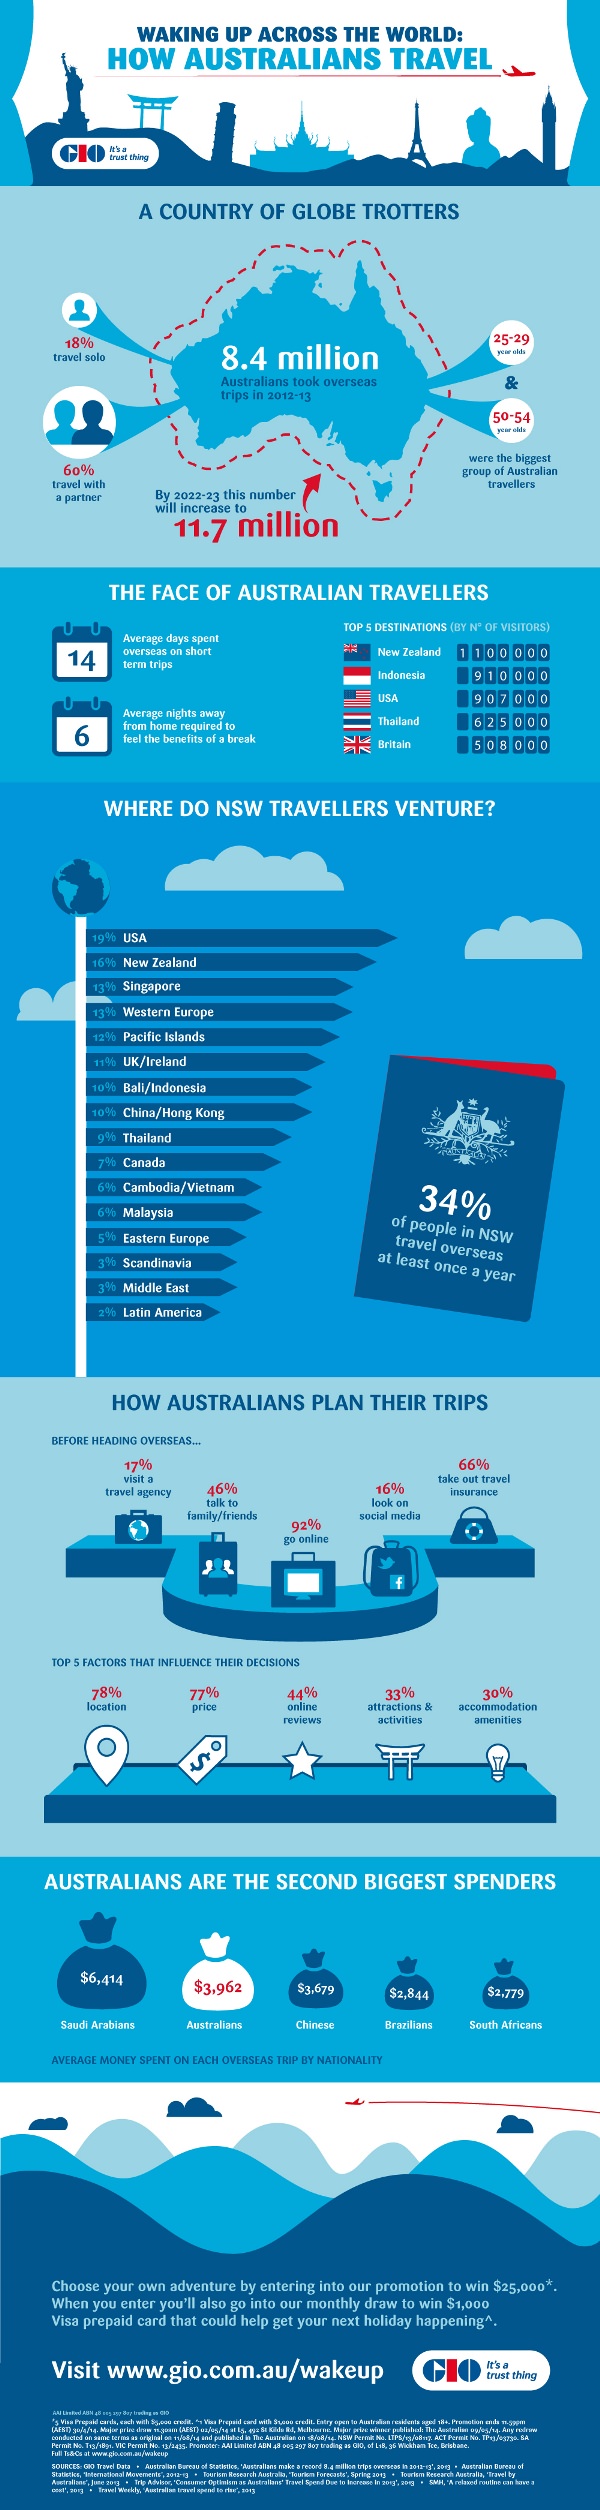 GIO-How-Australians-Travel